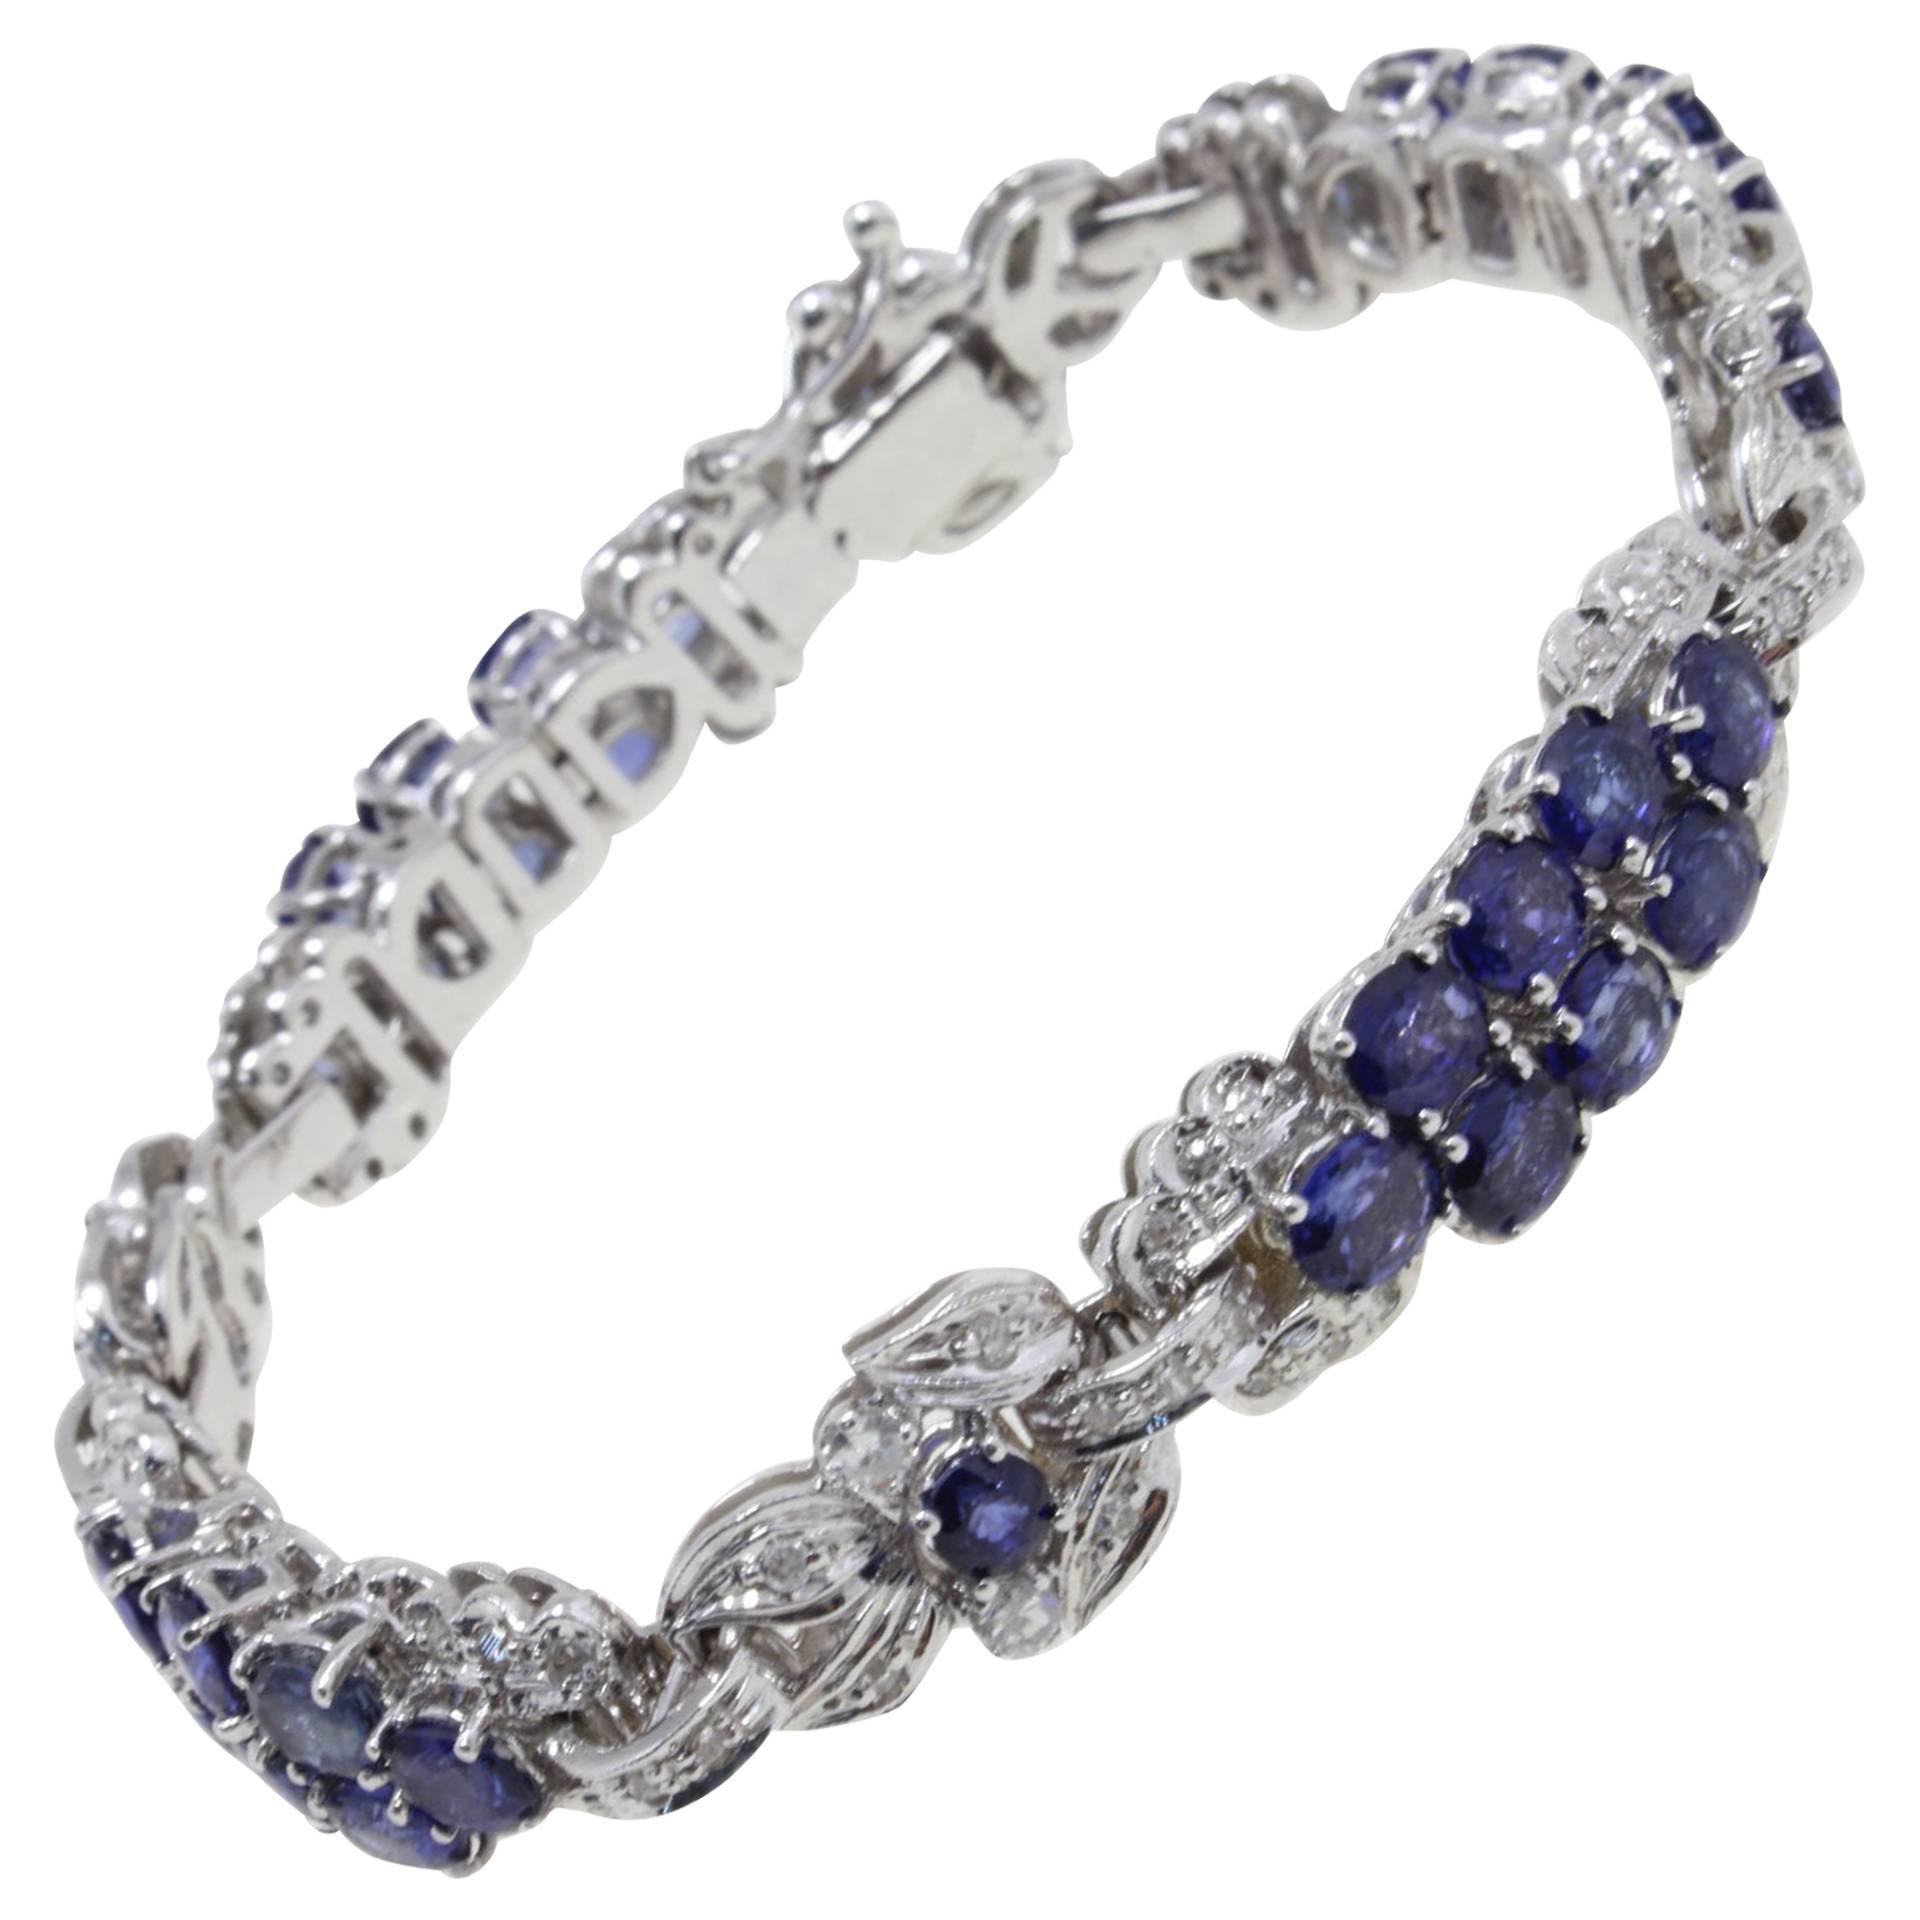 kt 1, 57 Diamonds and kt 16, 80 Blue Sapphires Link Bracelet